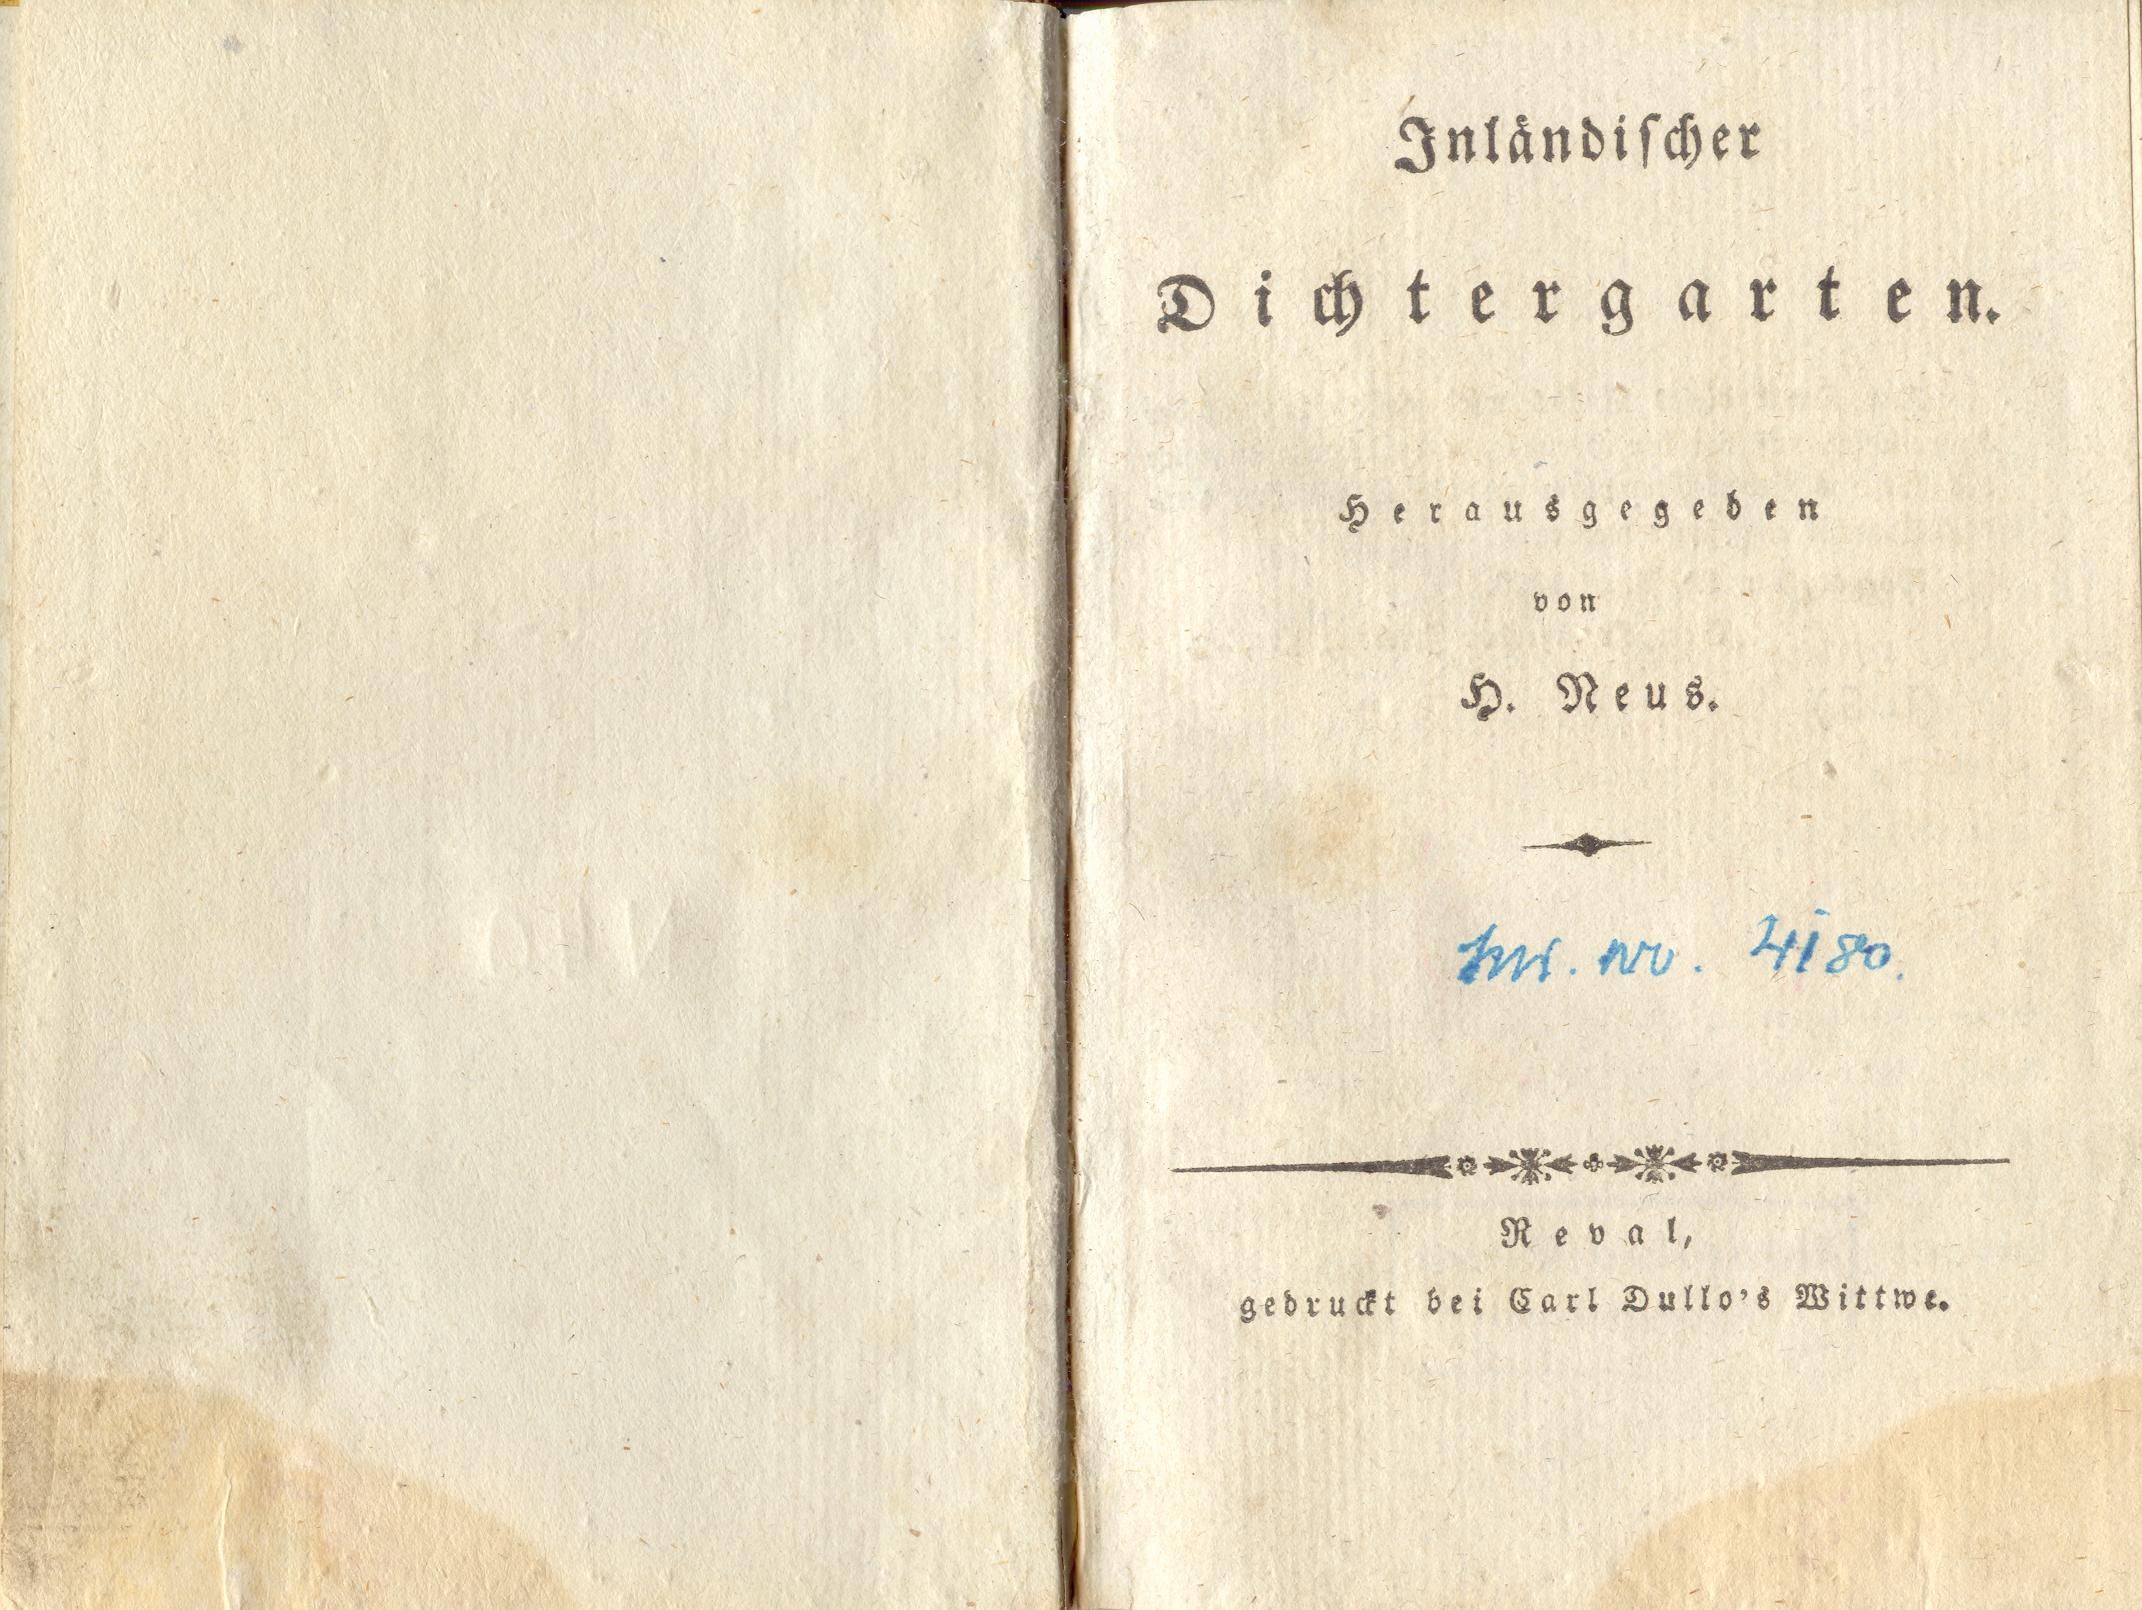 Inländischer Dichtergarten [1] (1828) | 2. Title page